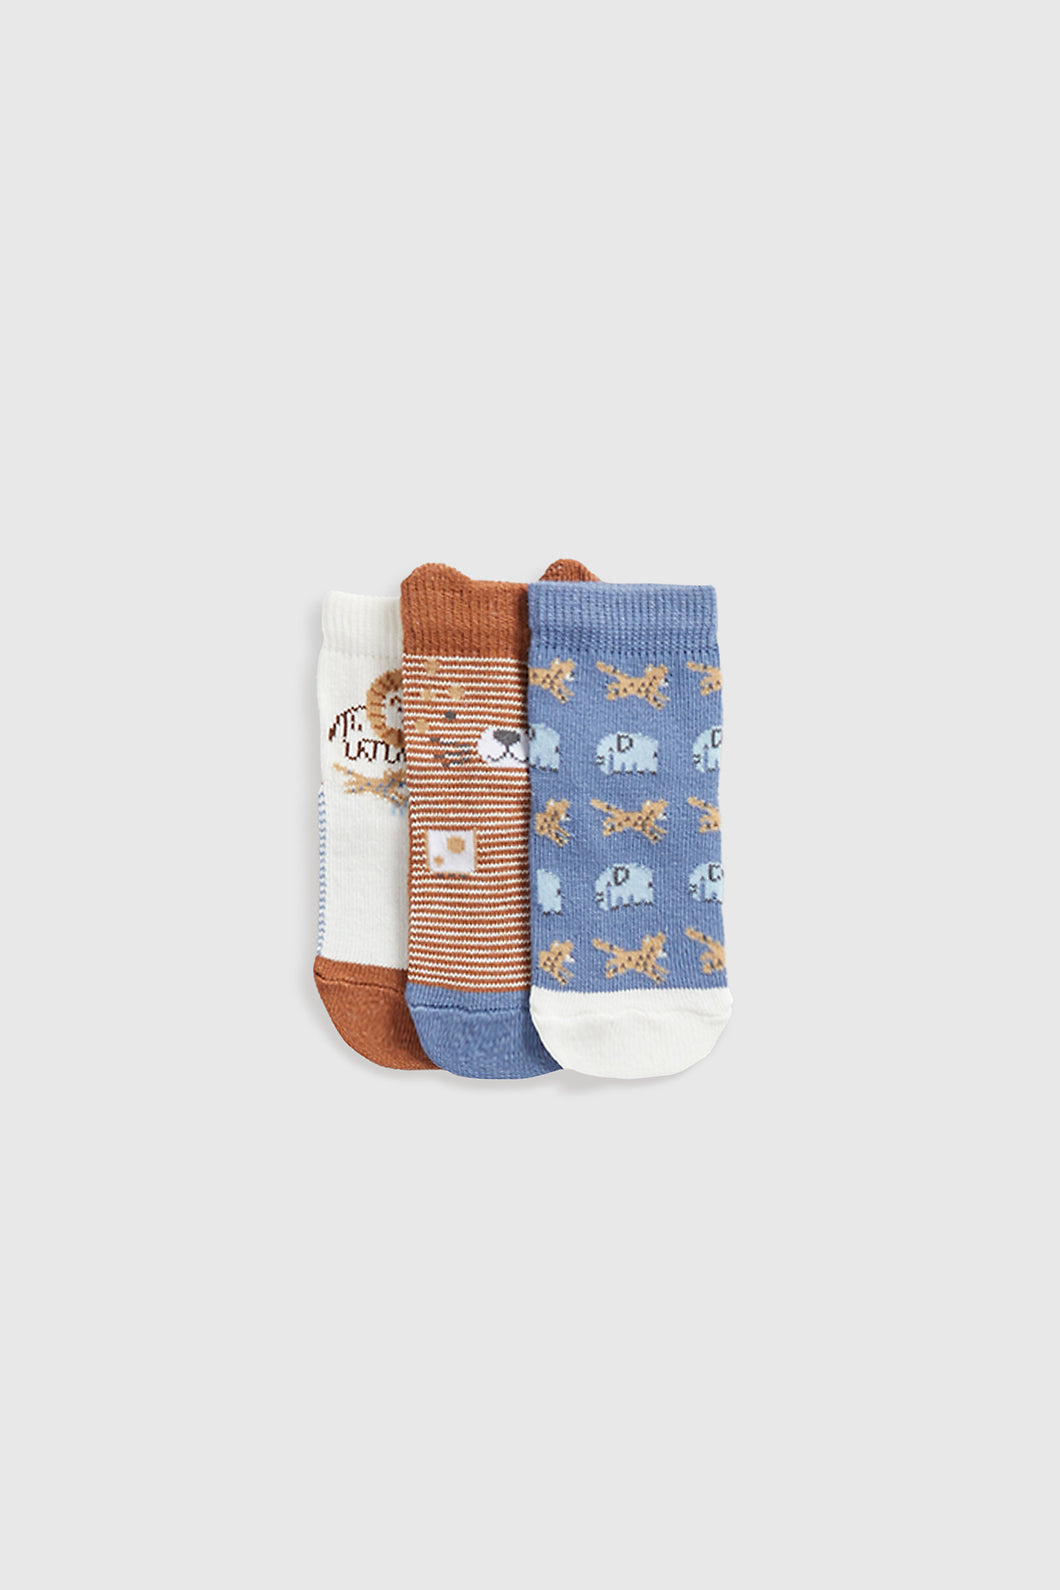 Mothercare Safari Baby Socks - 3 Pack